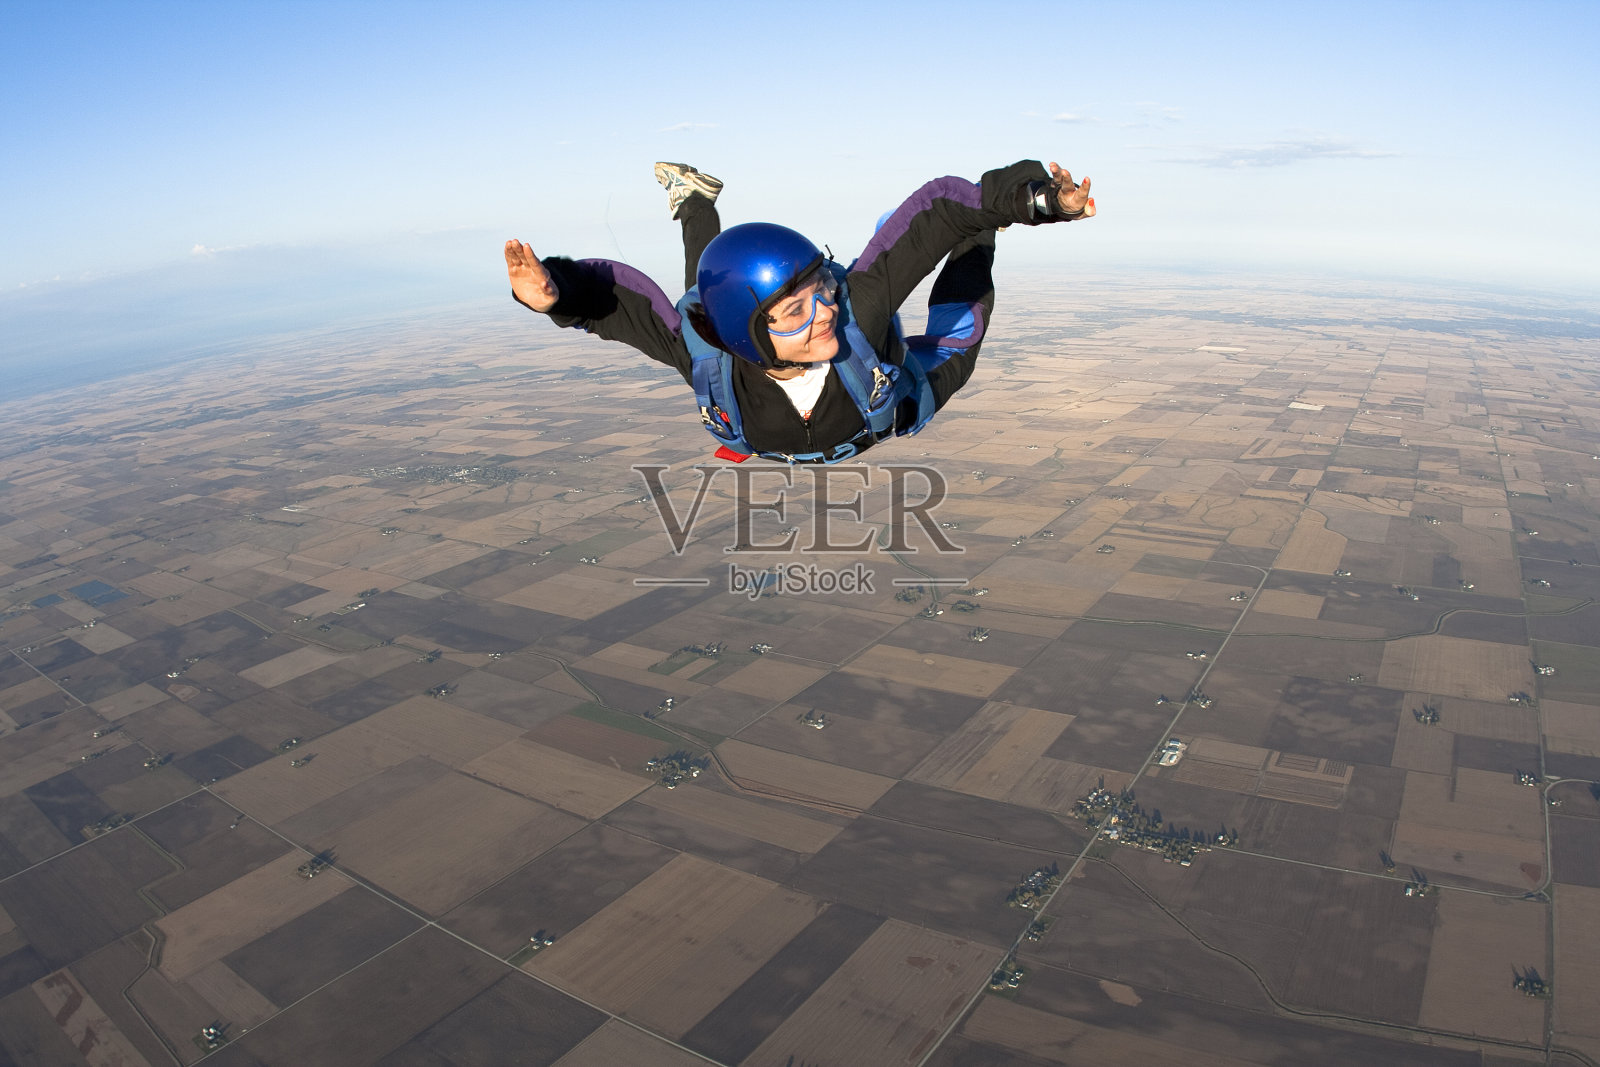 版权免费库存照片:快乐的女人跳伞照片摄影图片